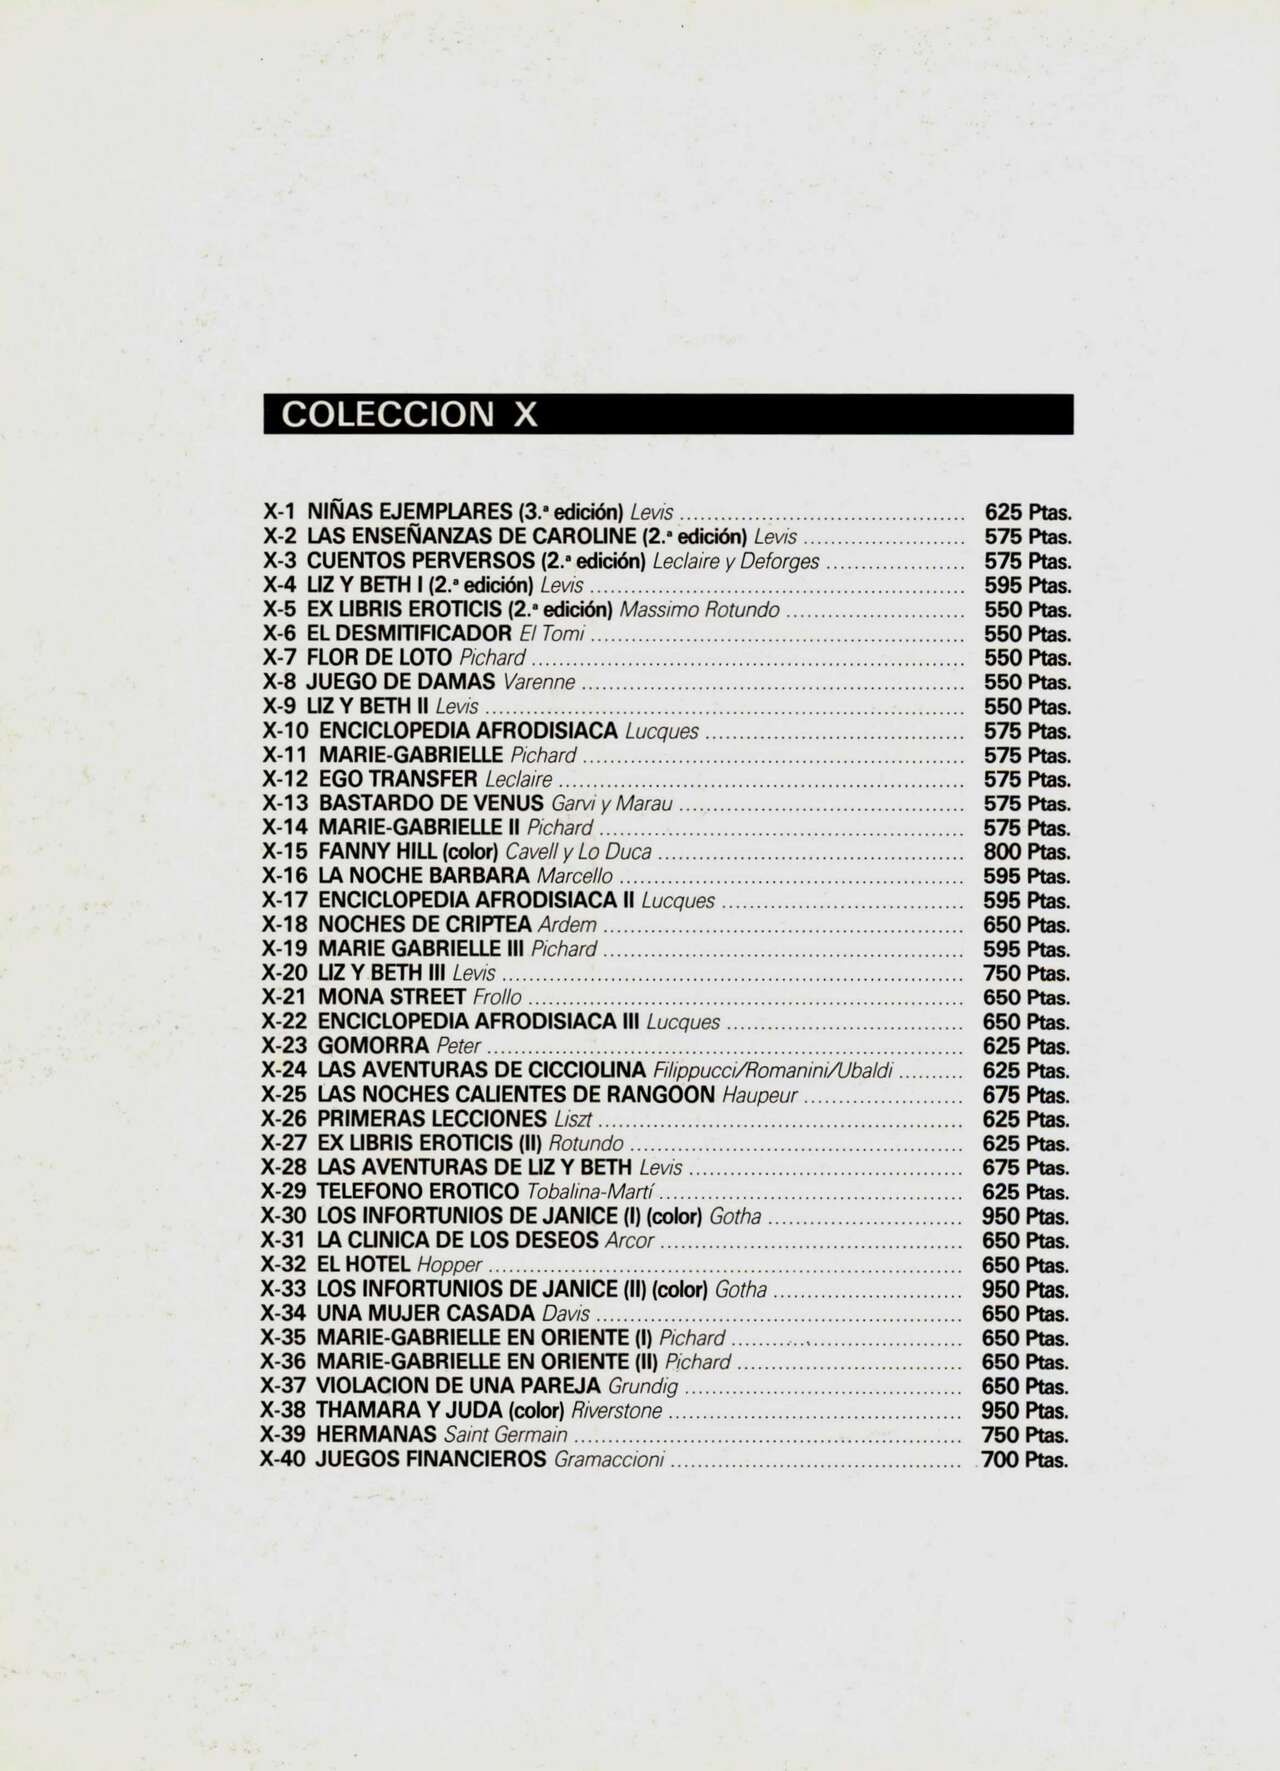 [Collections X (Gramaccioni)] Juegos Financieros [Spanish] 50